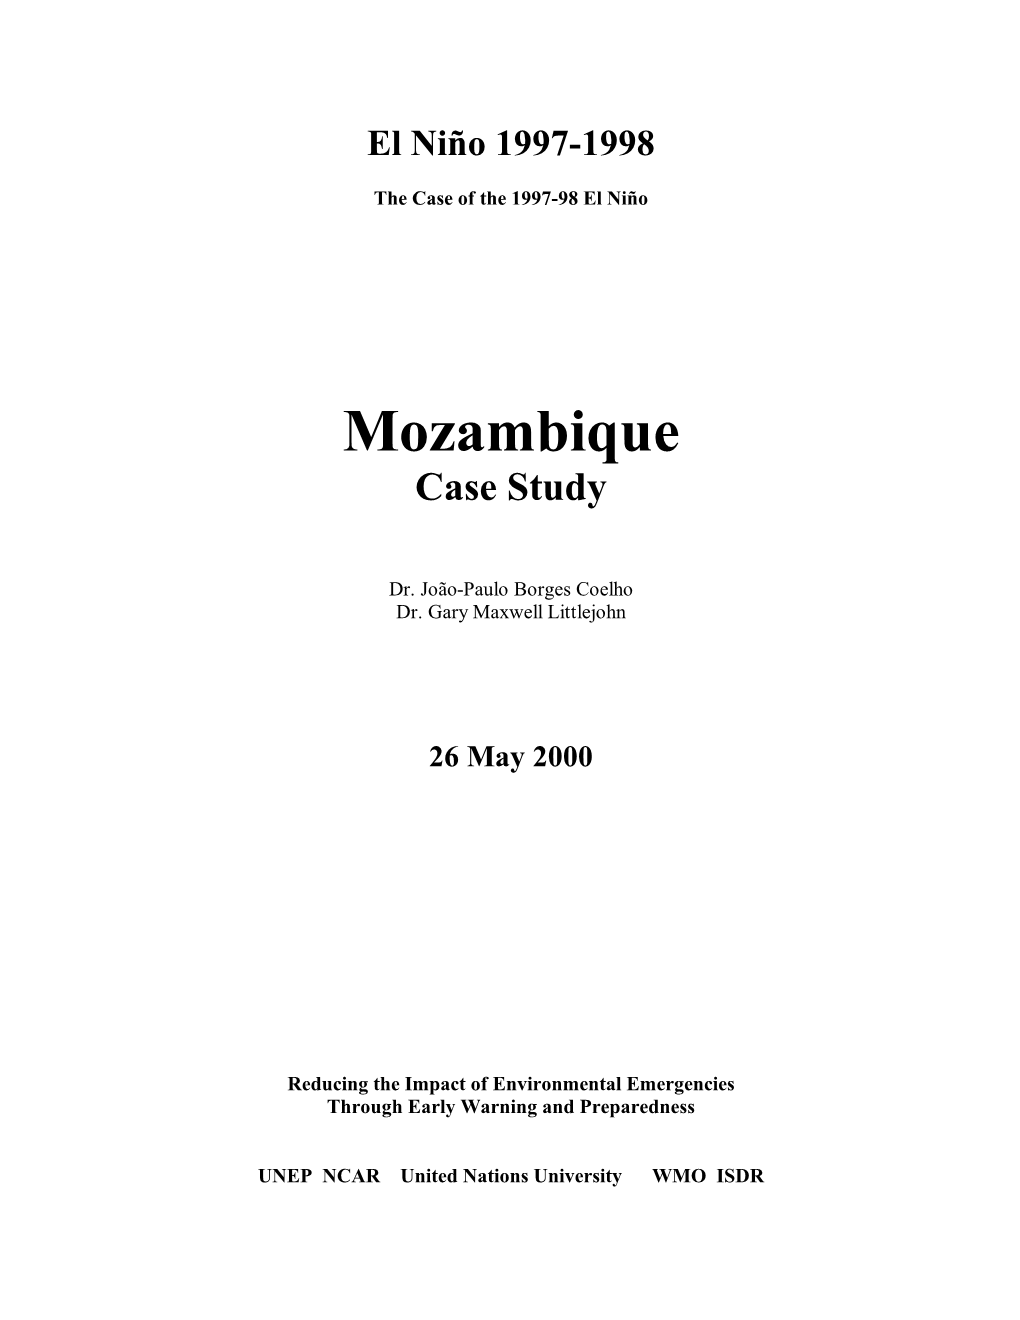 Mozambique Case Study